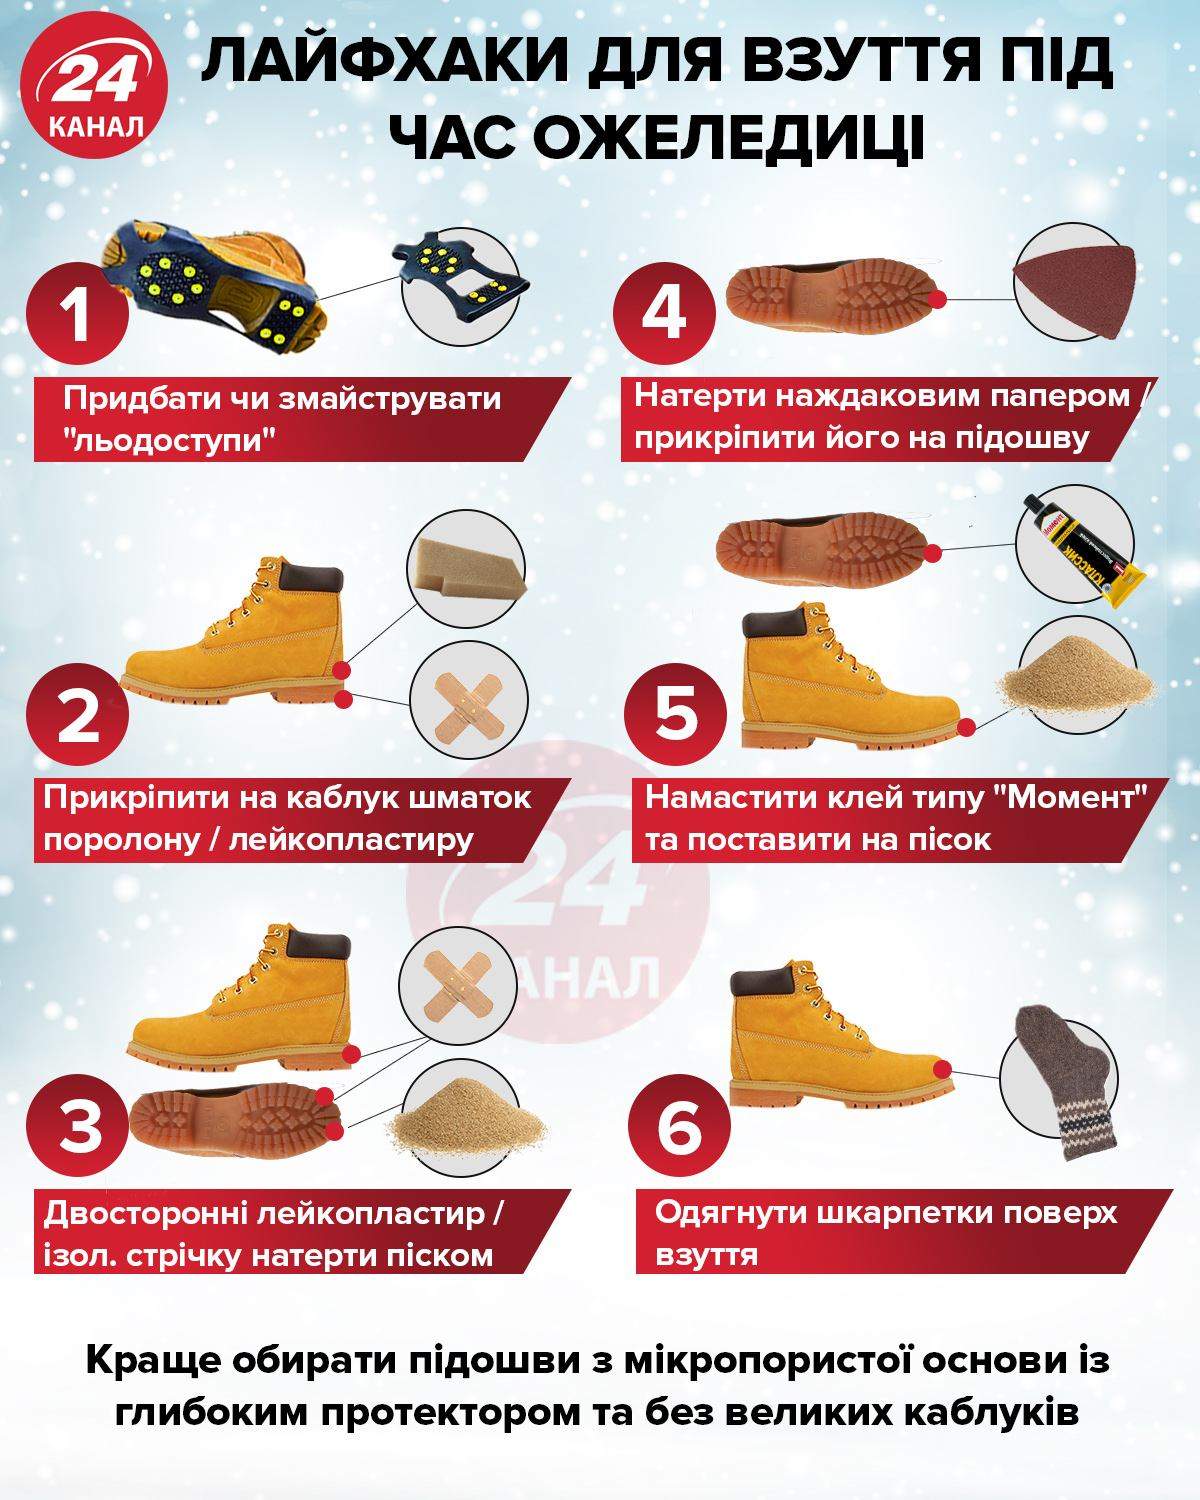 Лайфхаки для обуви во время гололеда / Инфографика 24 канала